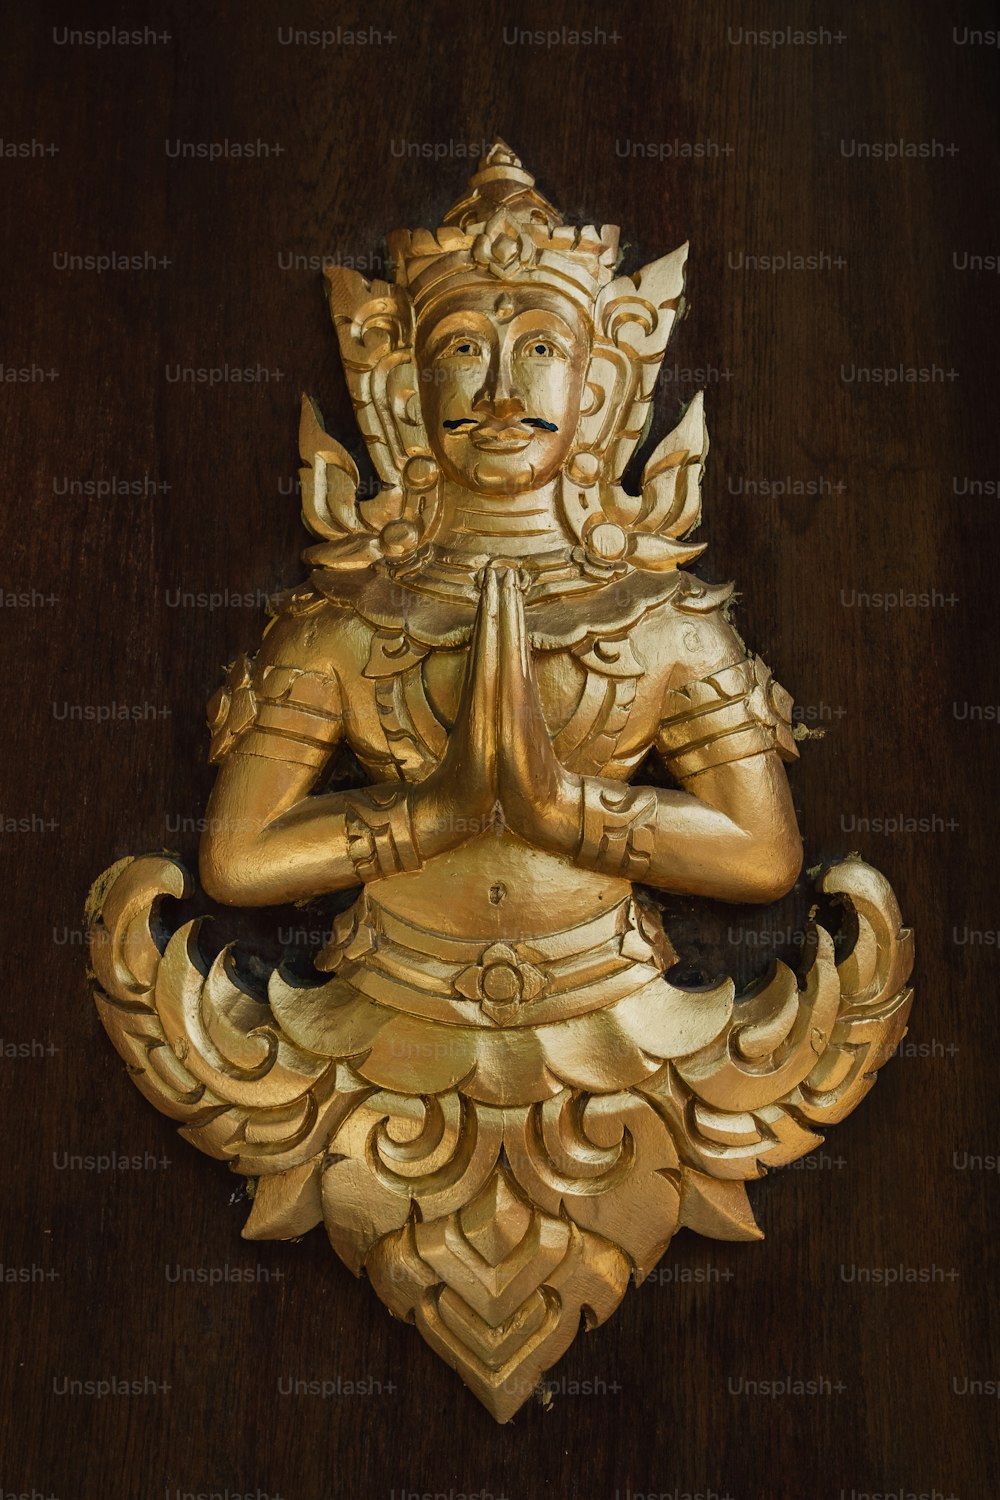 Una estatua dorada de una persona sentada en posición de loto